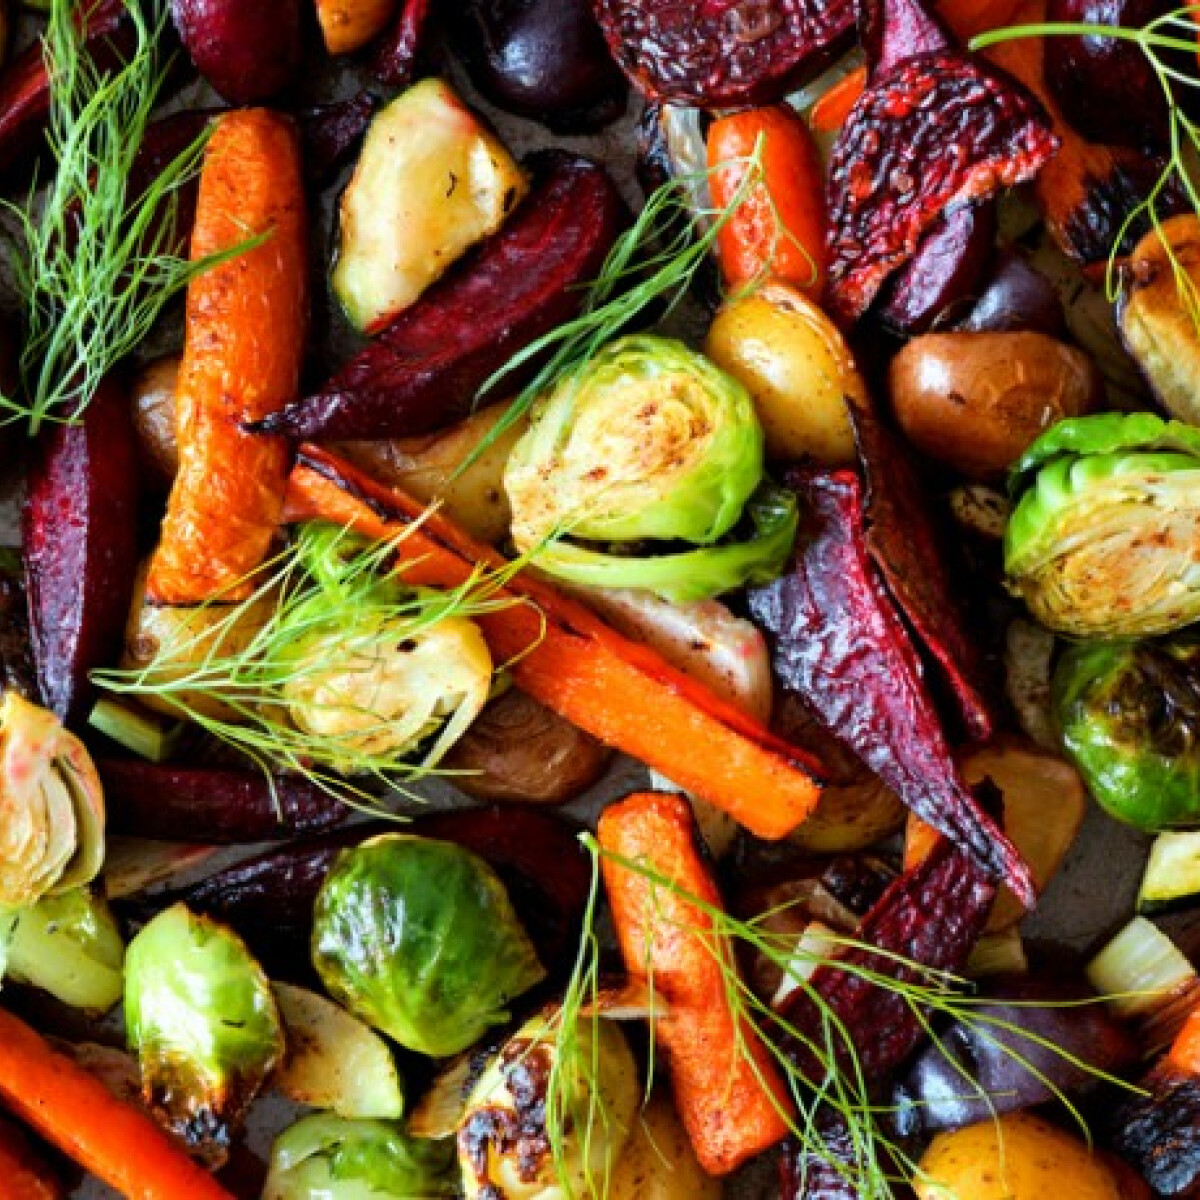 Fogyj zöldségekkel! 5 érv mellettük, ha leadnál pár kilót